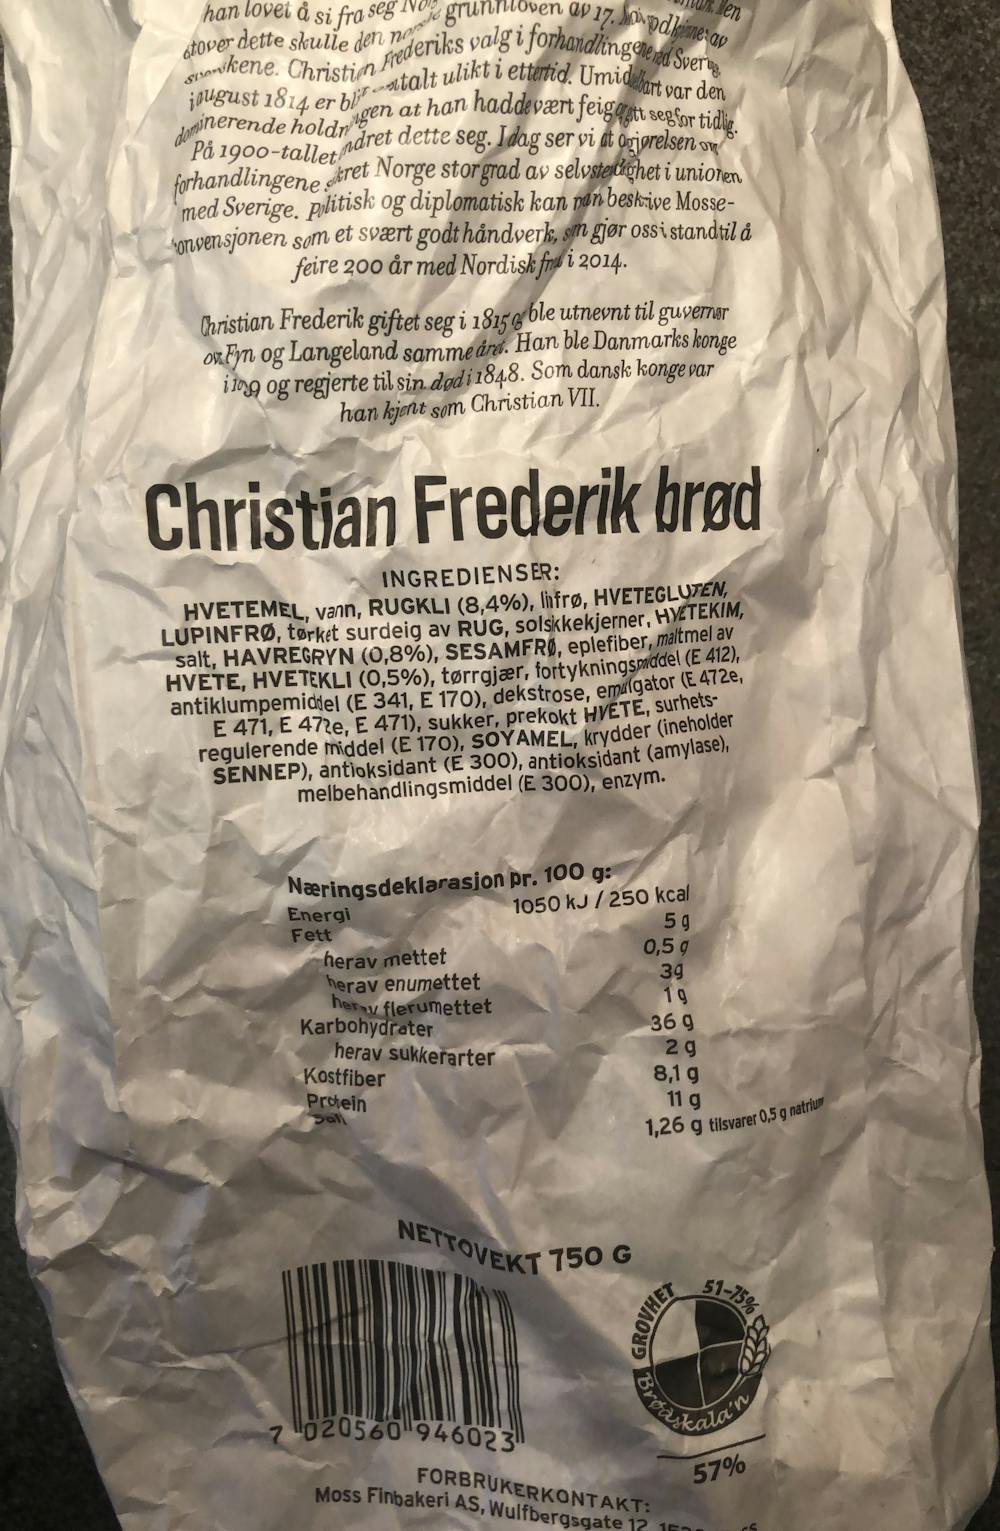 Ingredienslisten til Christian Frederik brød, Moss finbakeri